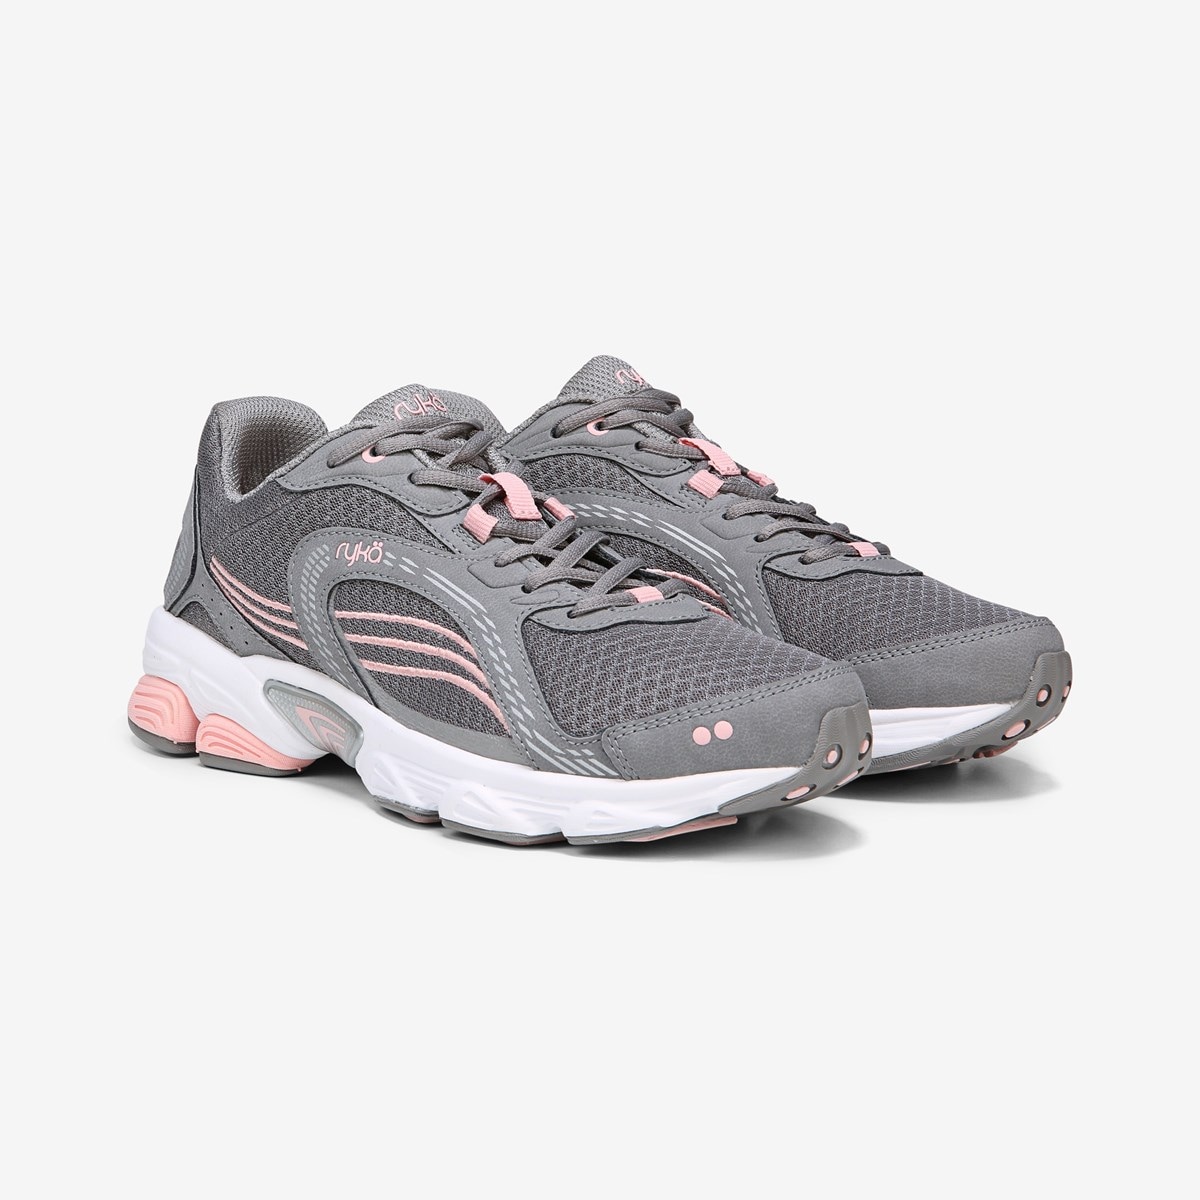 Ryka Ultimate Running Shoe in Grey/Rose 